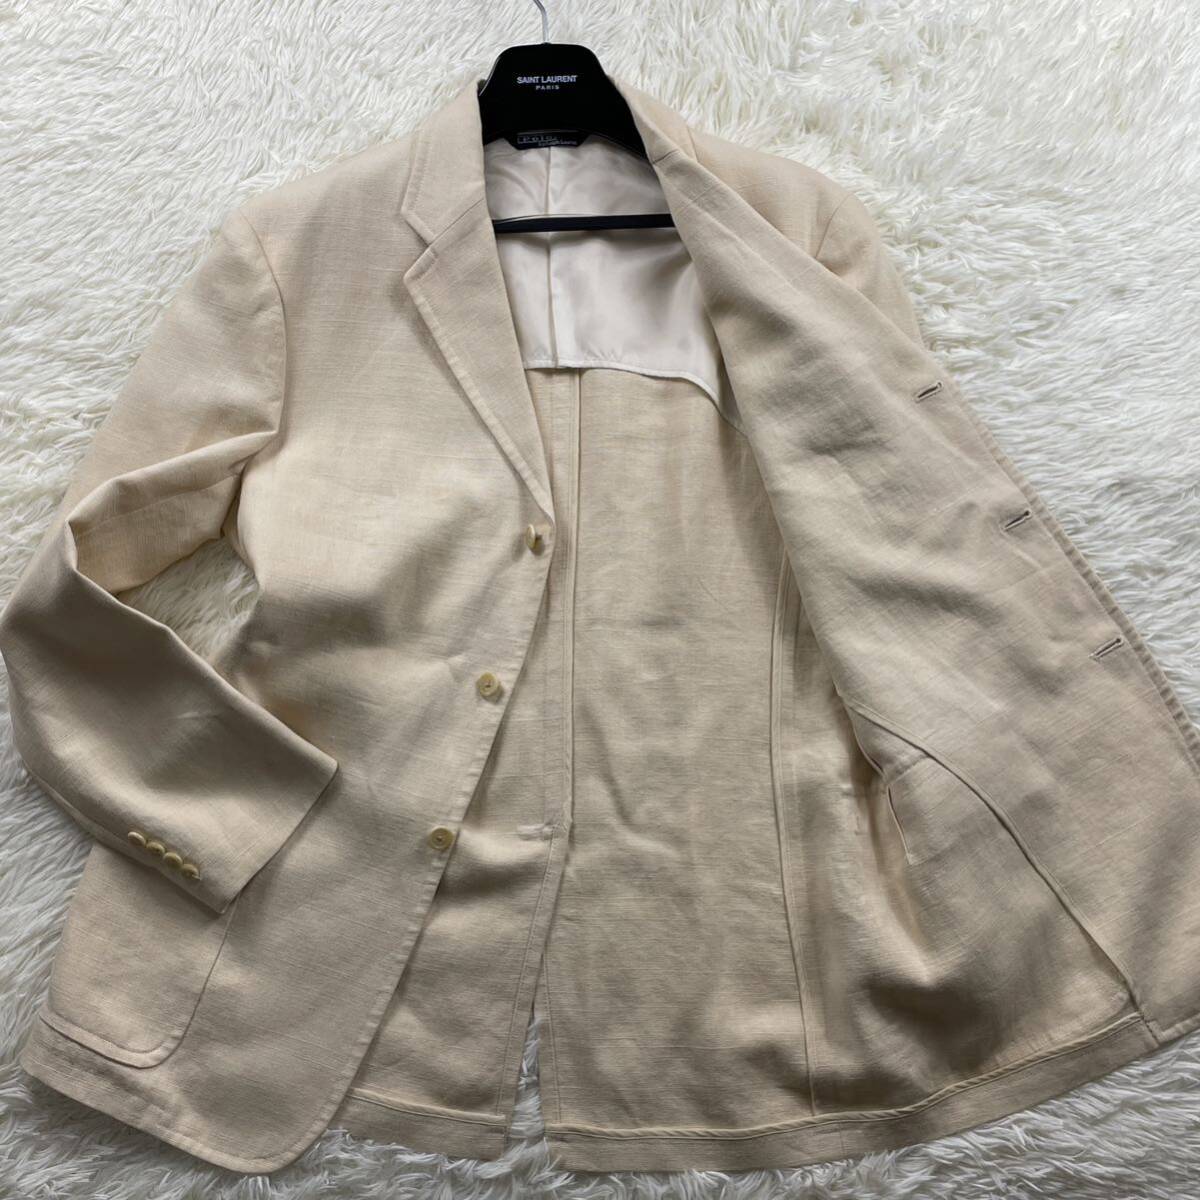 極美品『希少XL』ポロラルフローレン Polo Ralph Lauren テーラードジャケット リネン 100% スーツ 背抜き 麻 ベージュ 白系 メンズの画像1